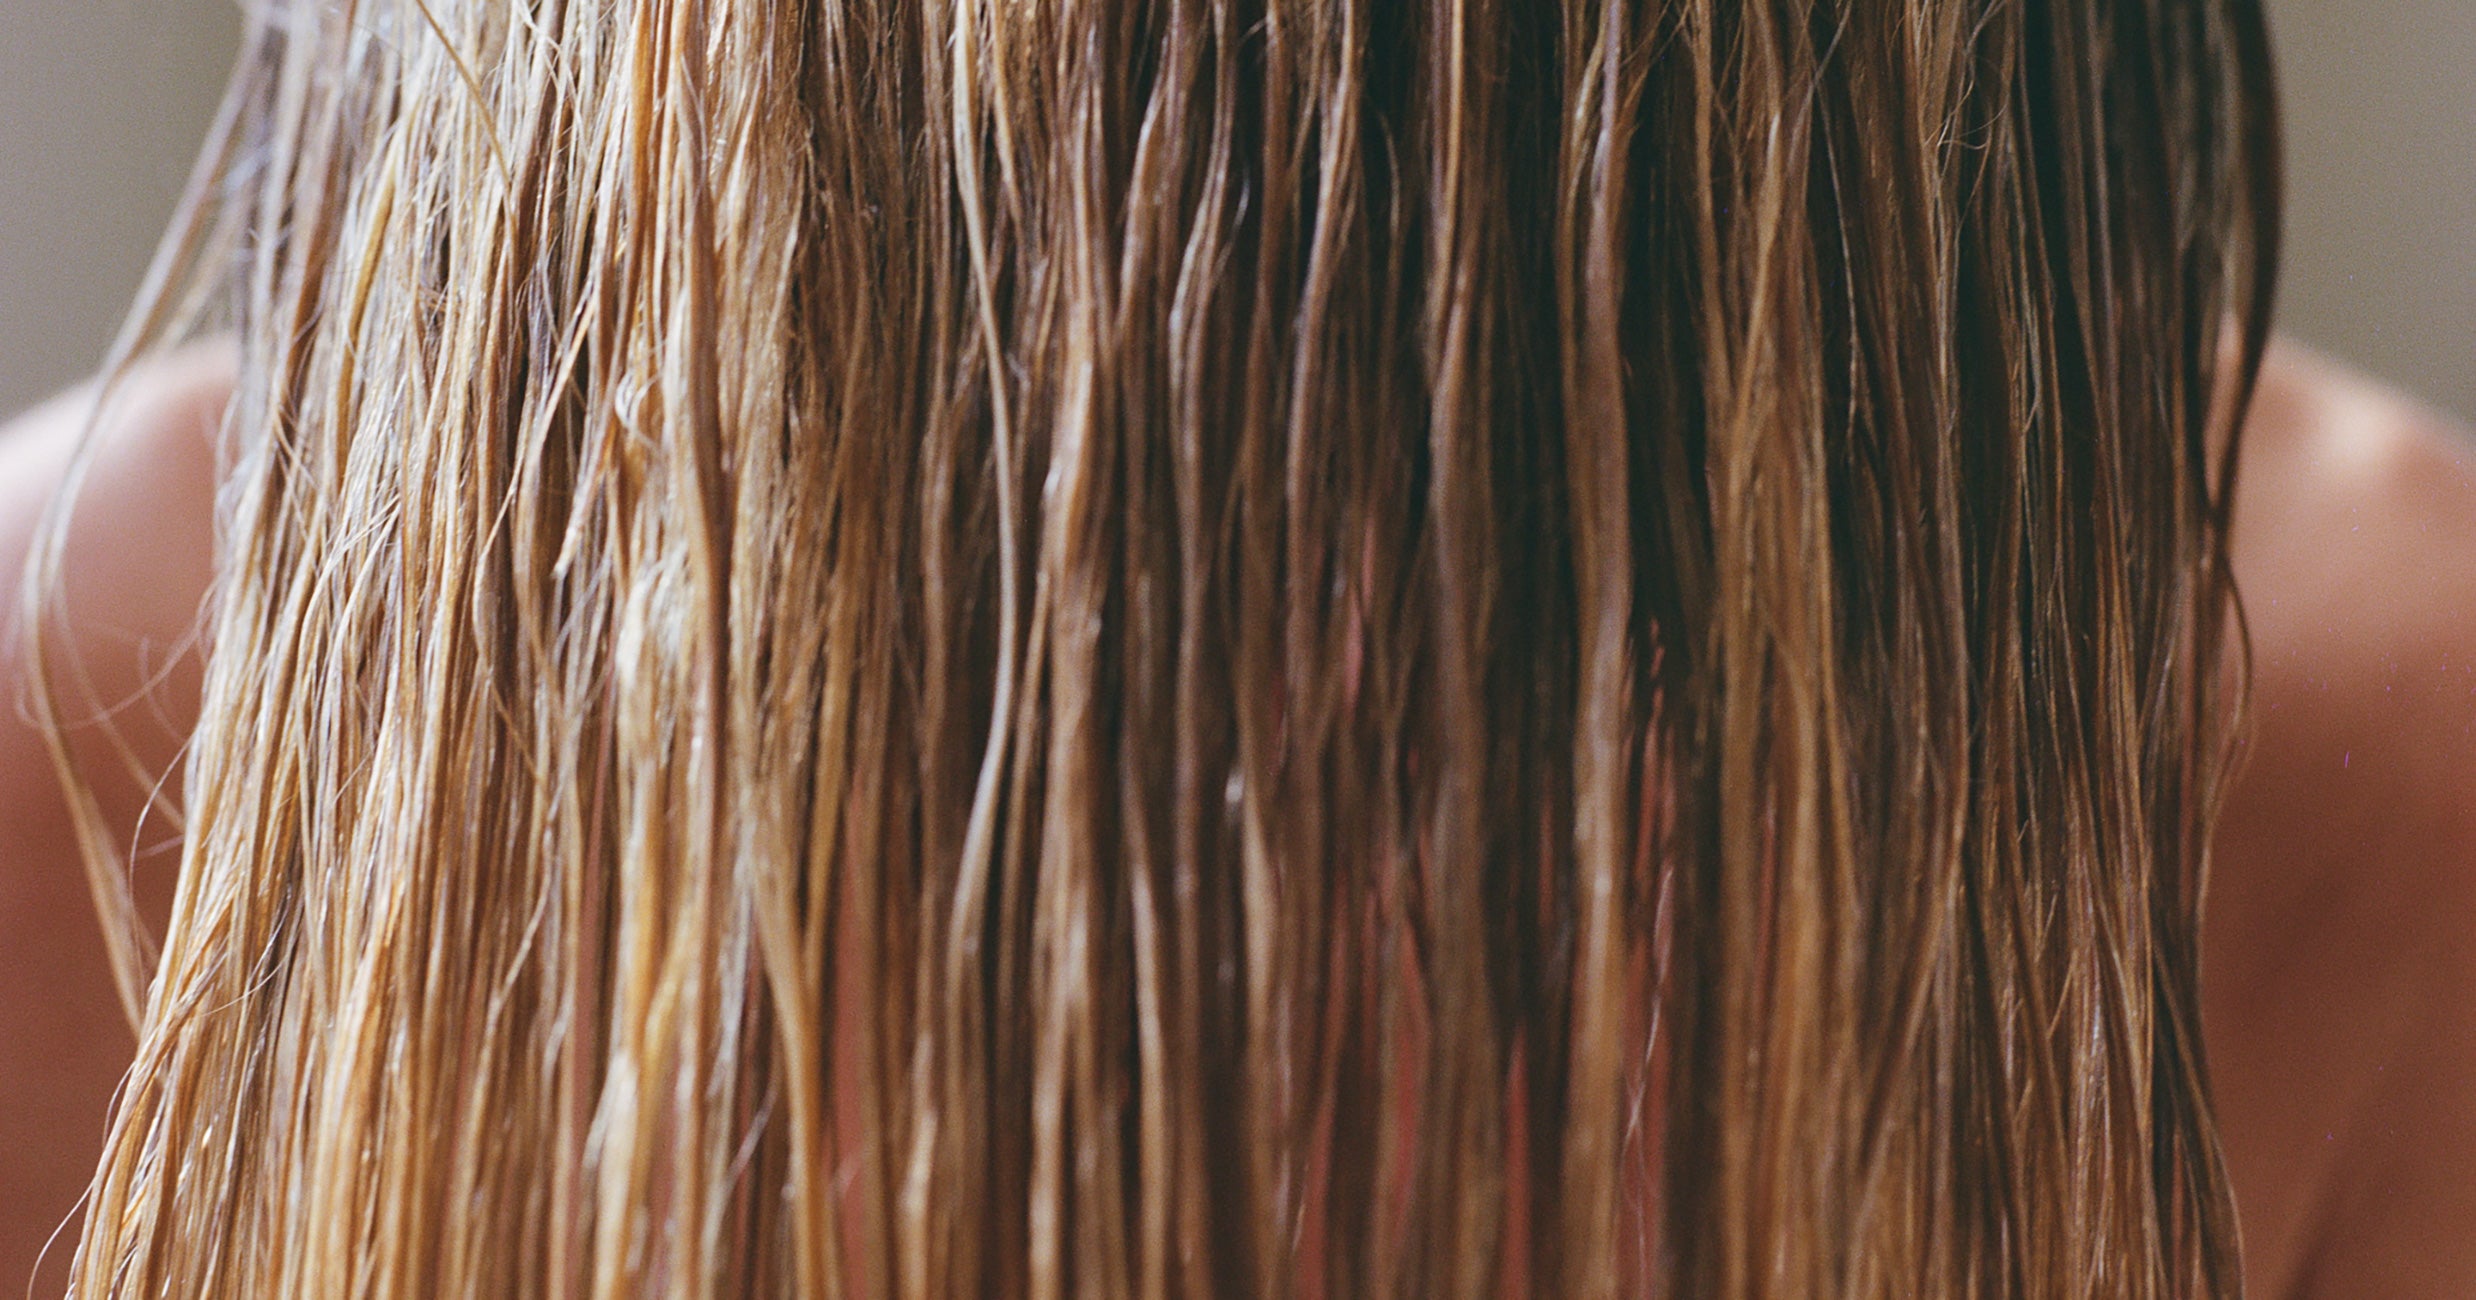 Color Correction Hair Tips To Fix A Terrible Dye Job